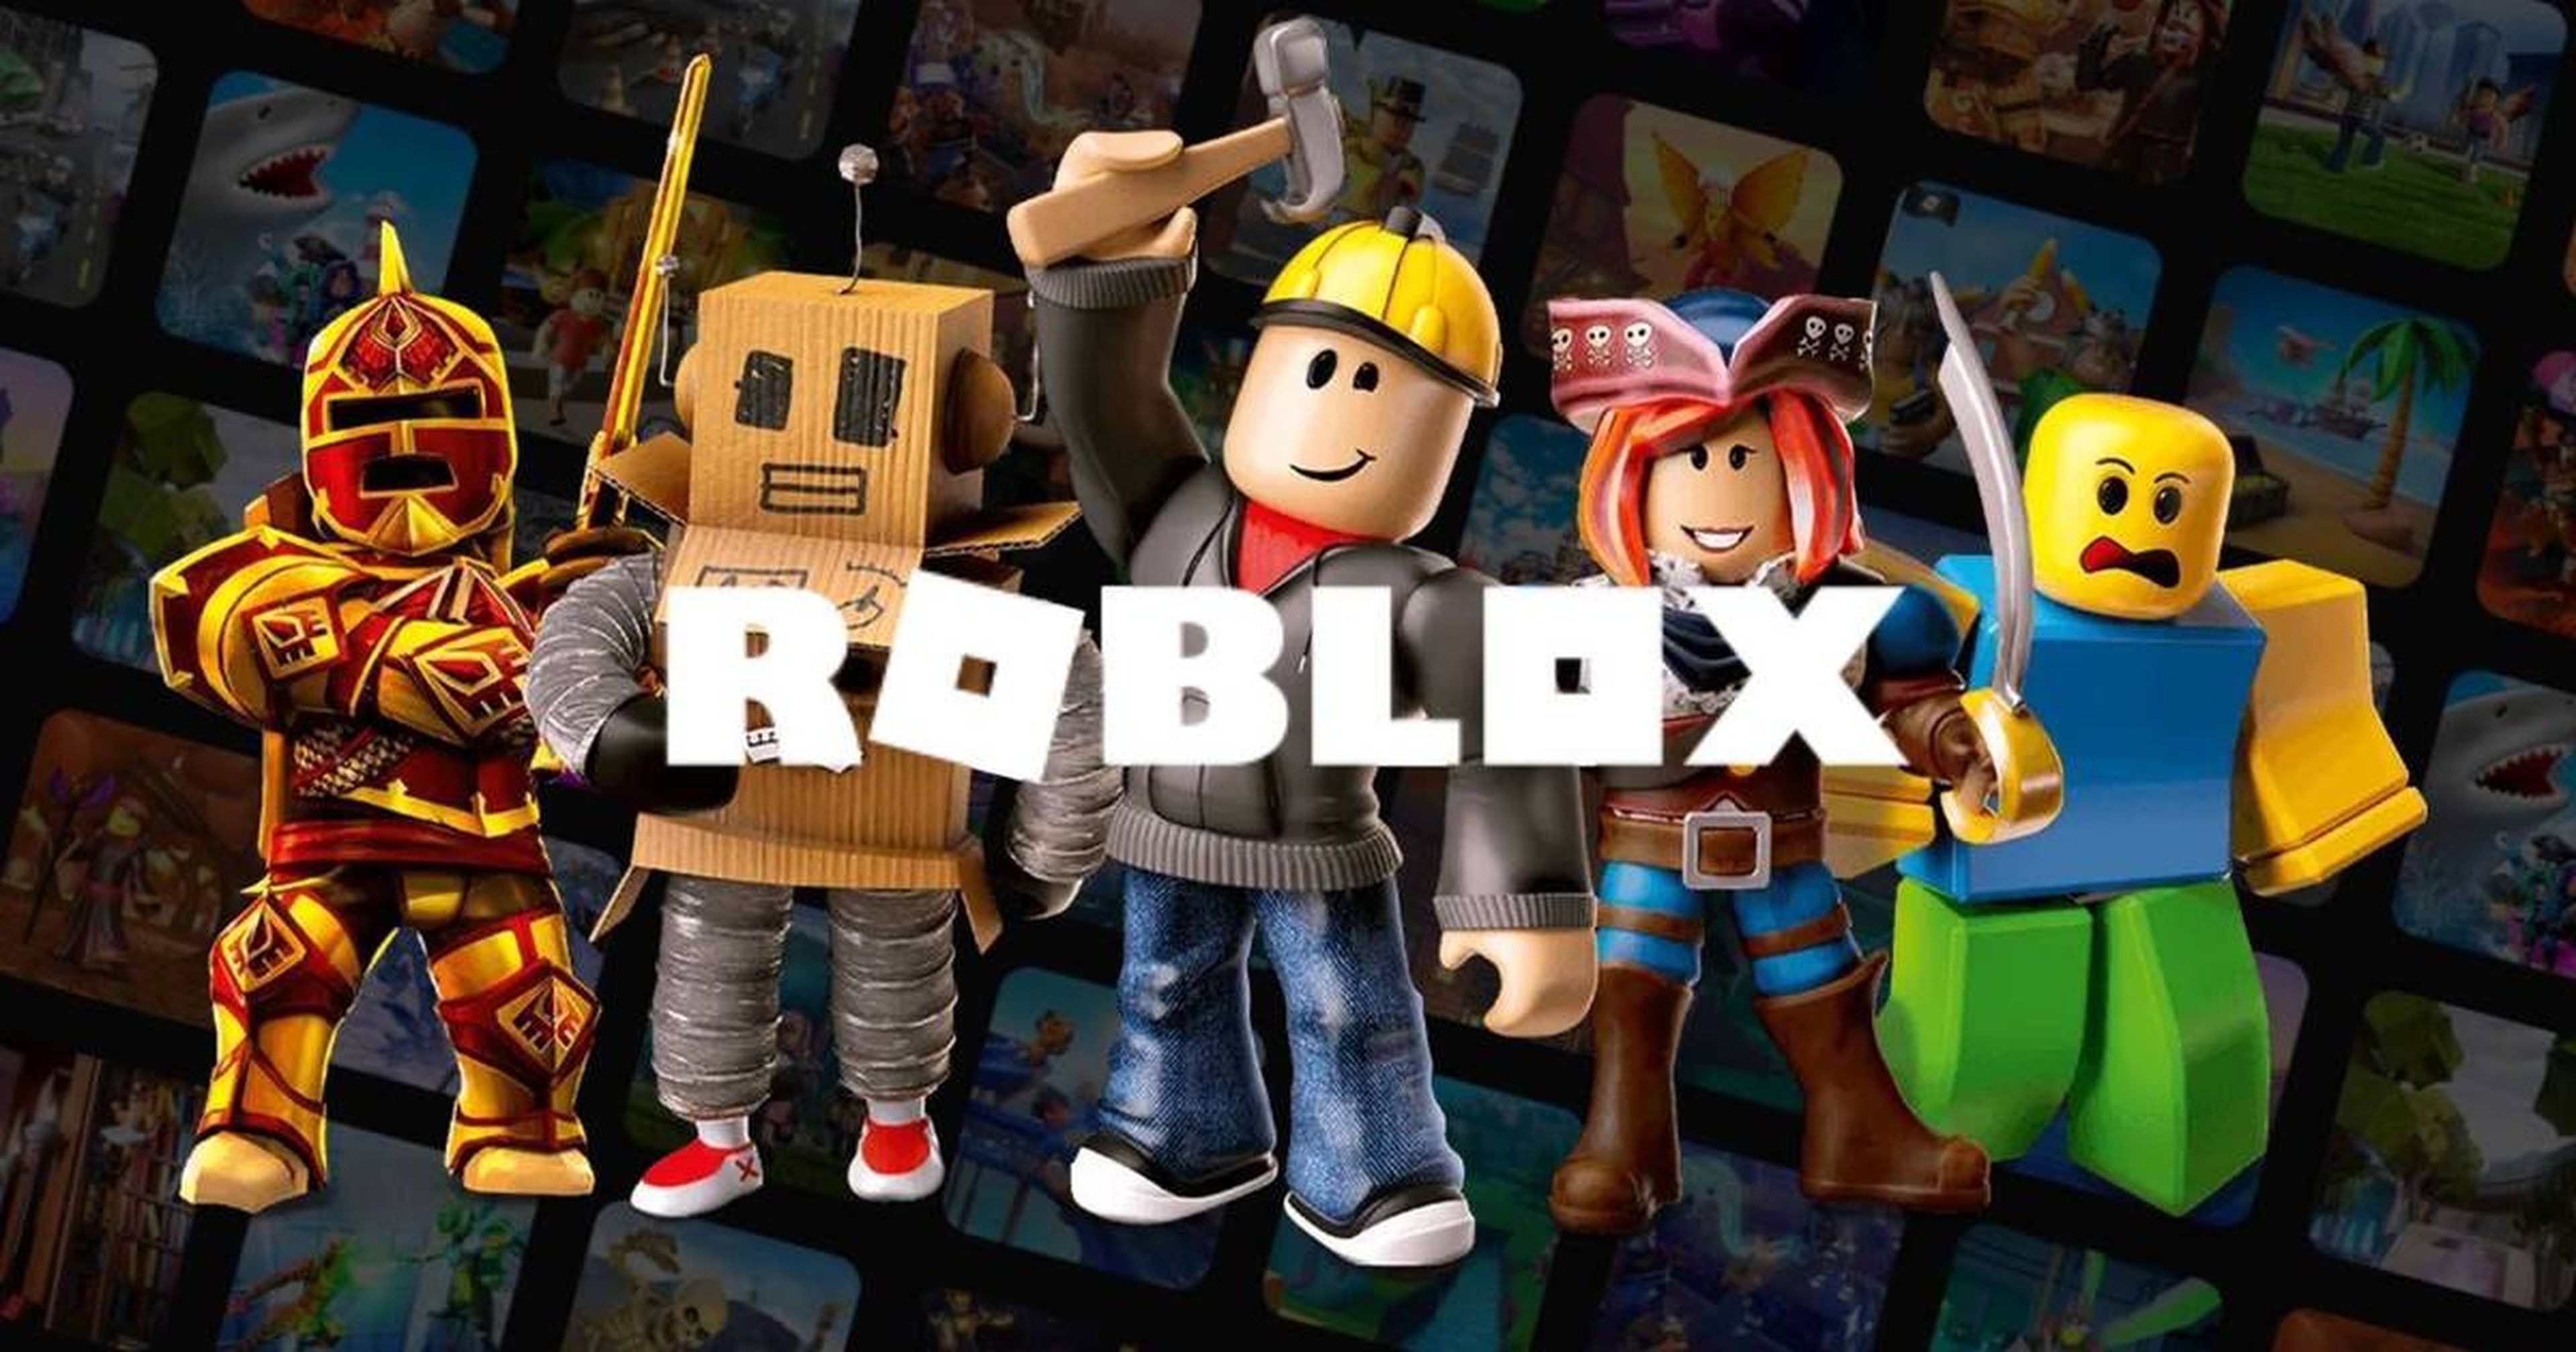 Robux gratis en Roblox: cómo conseguir la moneda del juego - Dexerto